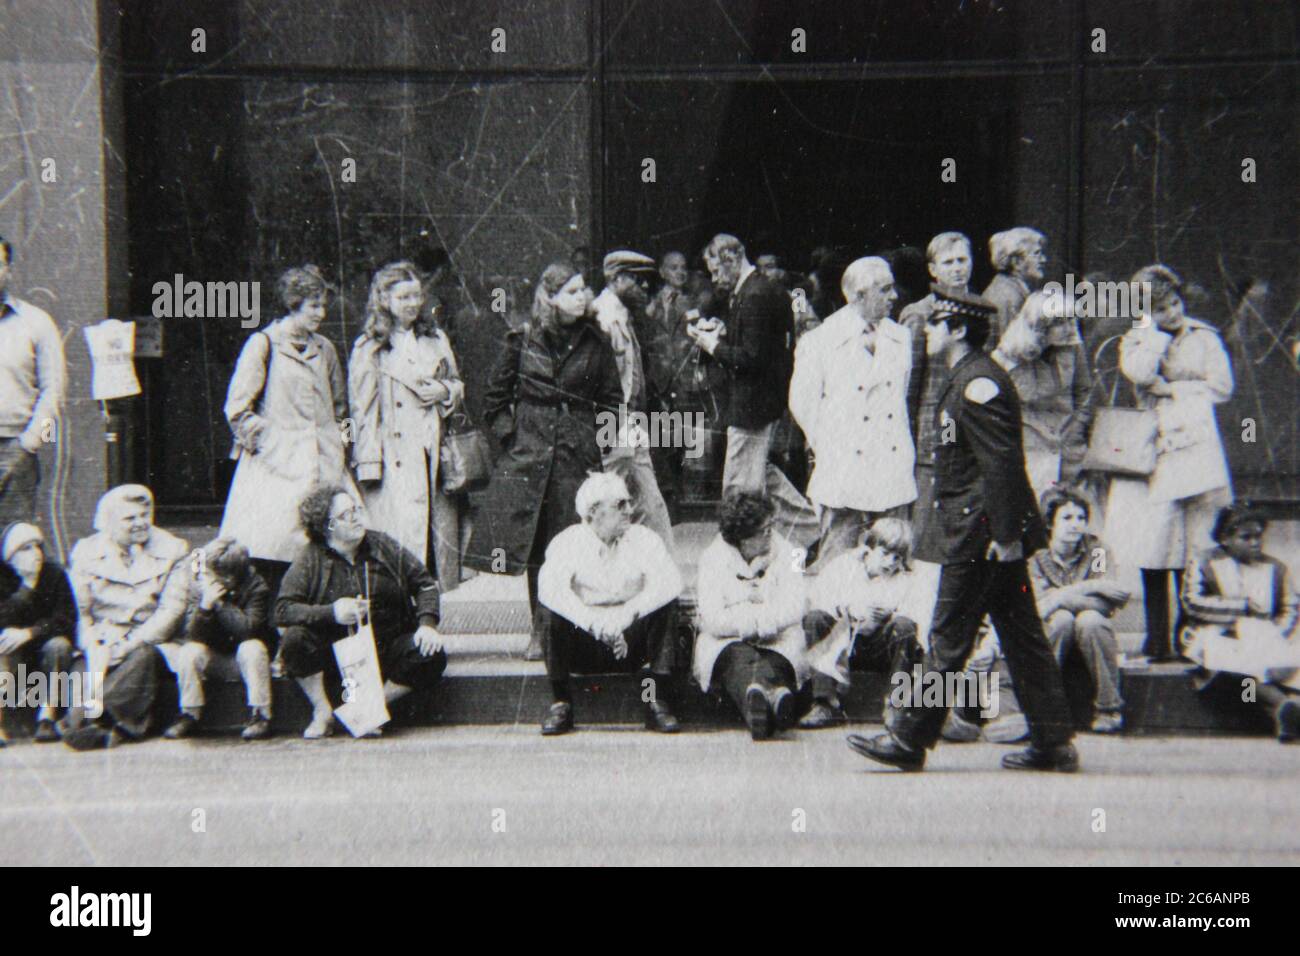 Fin années 70 vintage noir et blanc style de vie photographie d'une foule formant pour voir le défilé du centre-ville. Banque D'Images